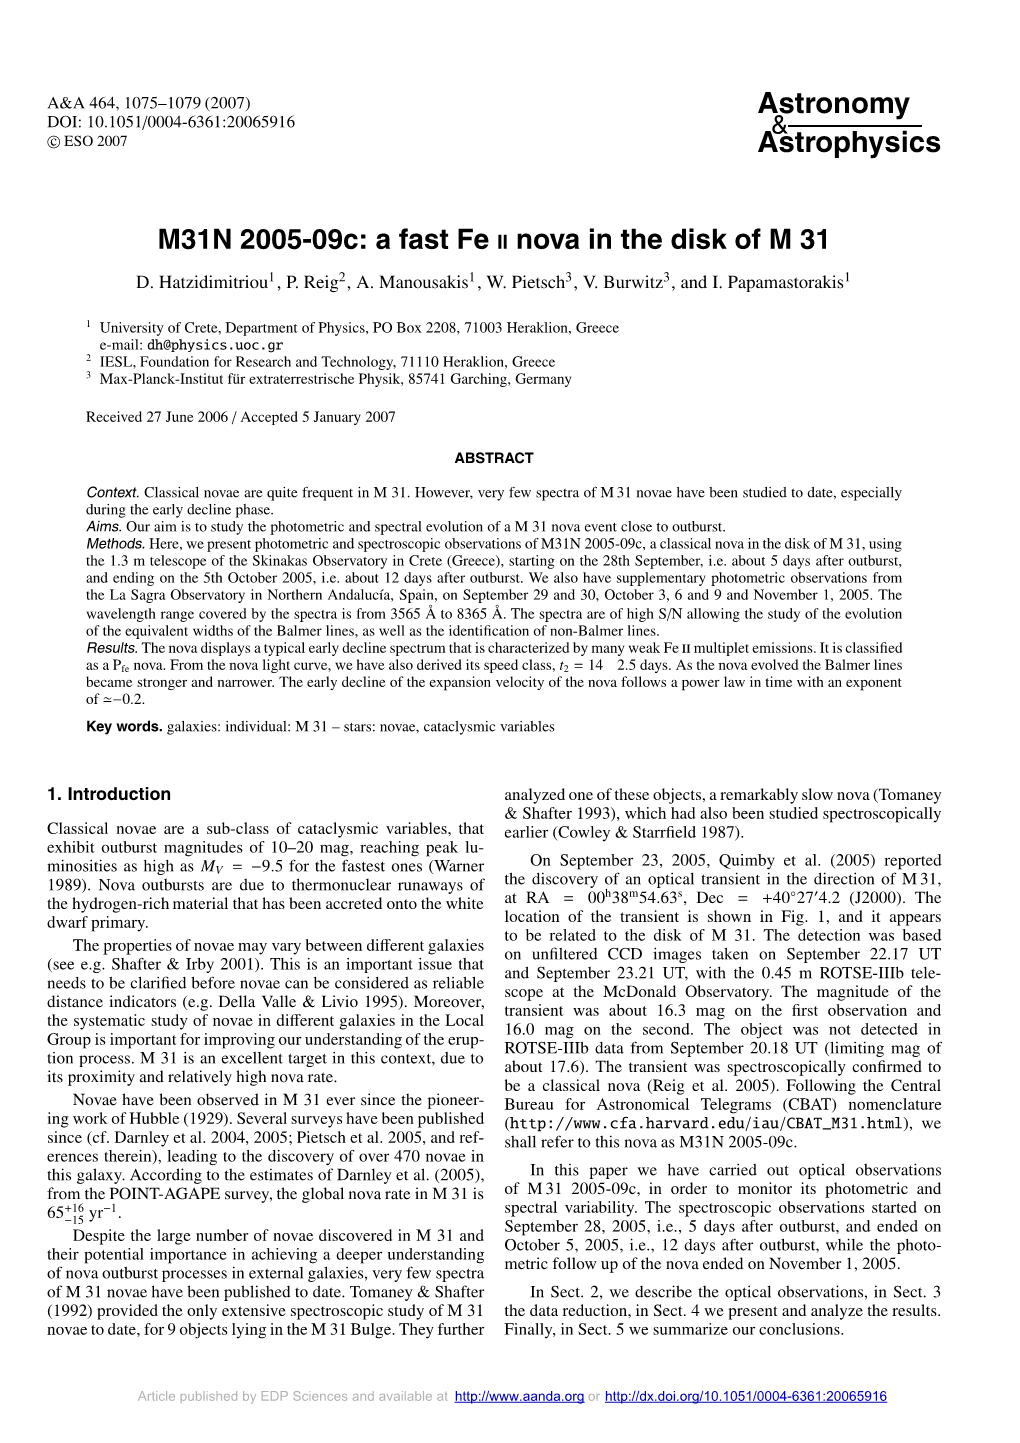 M31N 2005-09C: a Fast Fe II Nova in the Disk of M 31